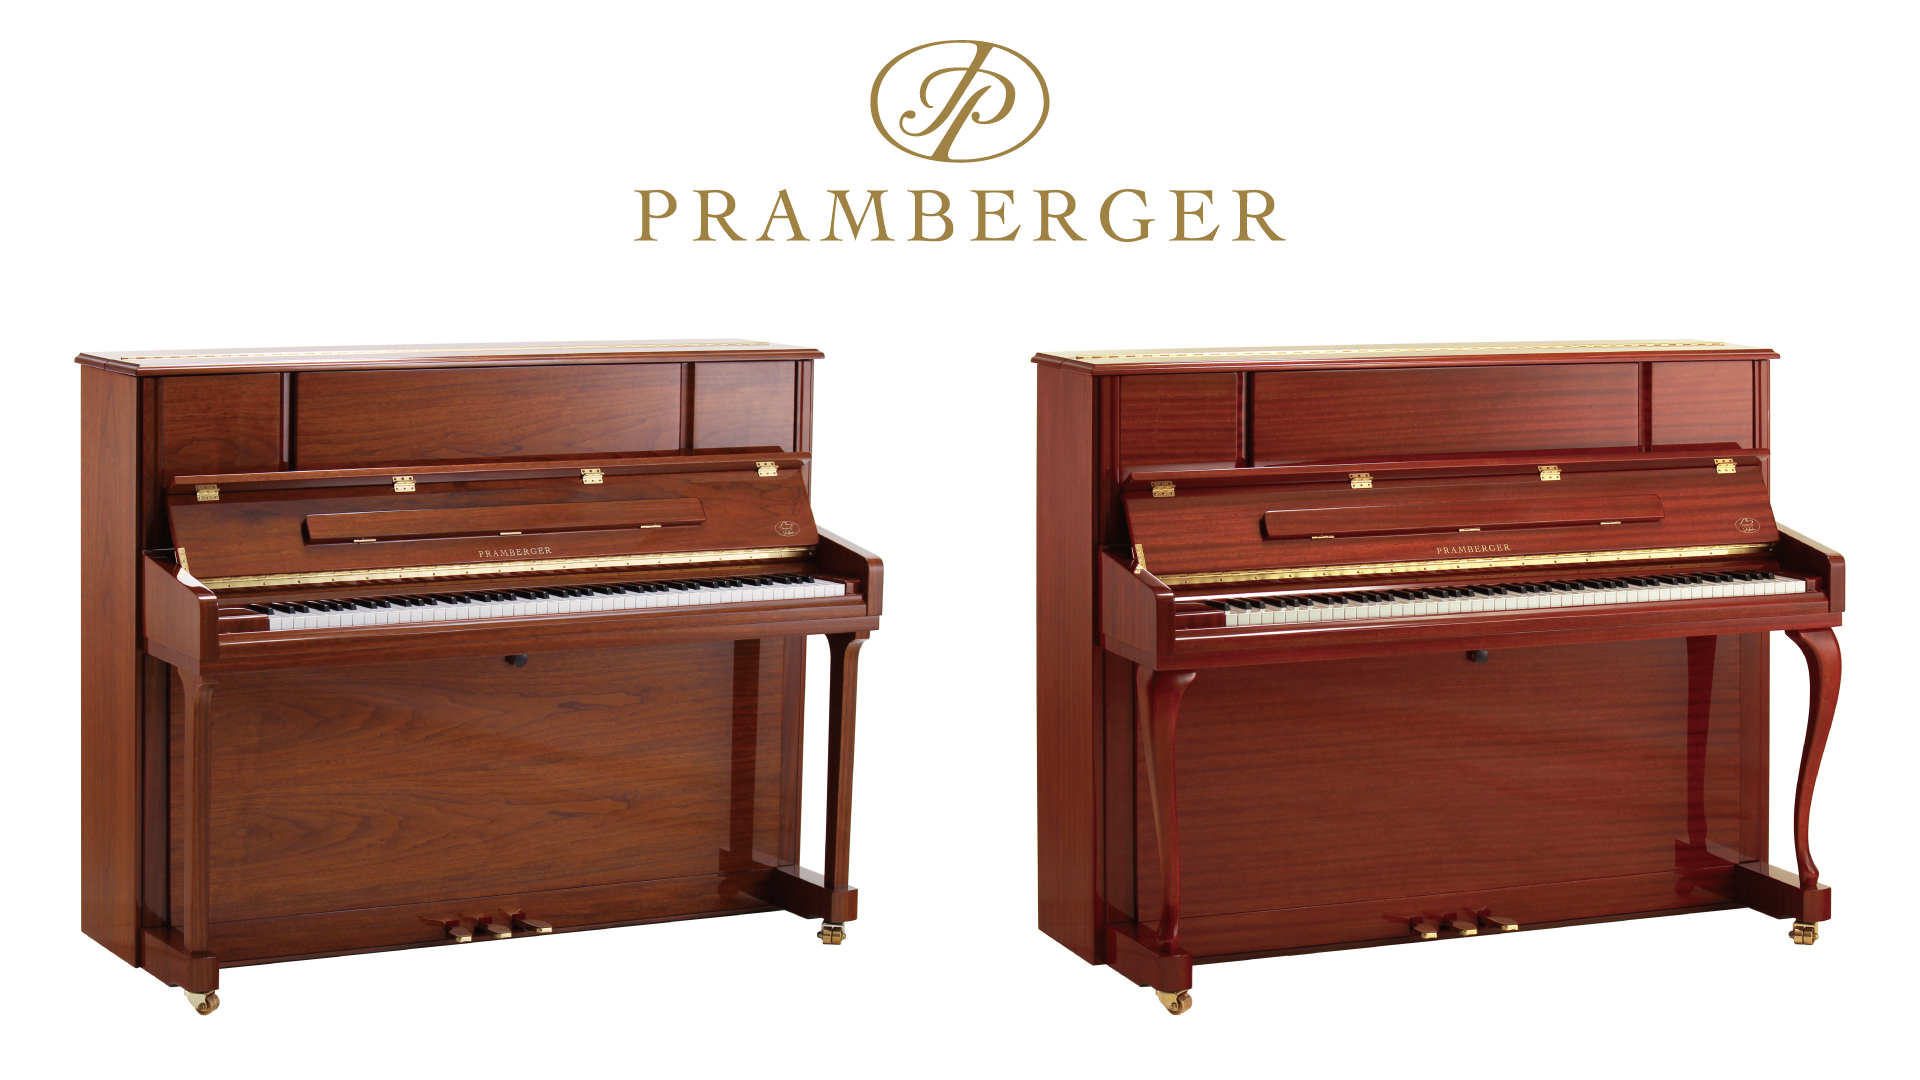 【新品アップライトピアノ】プレンバーガーから新設計・特別カラーを採用した日本限定モデルピアノ発売